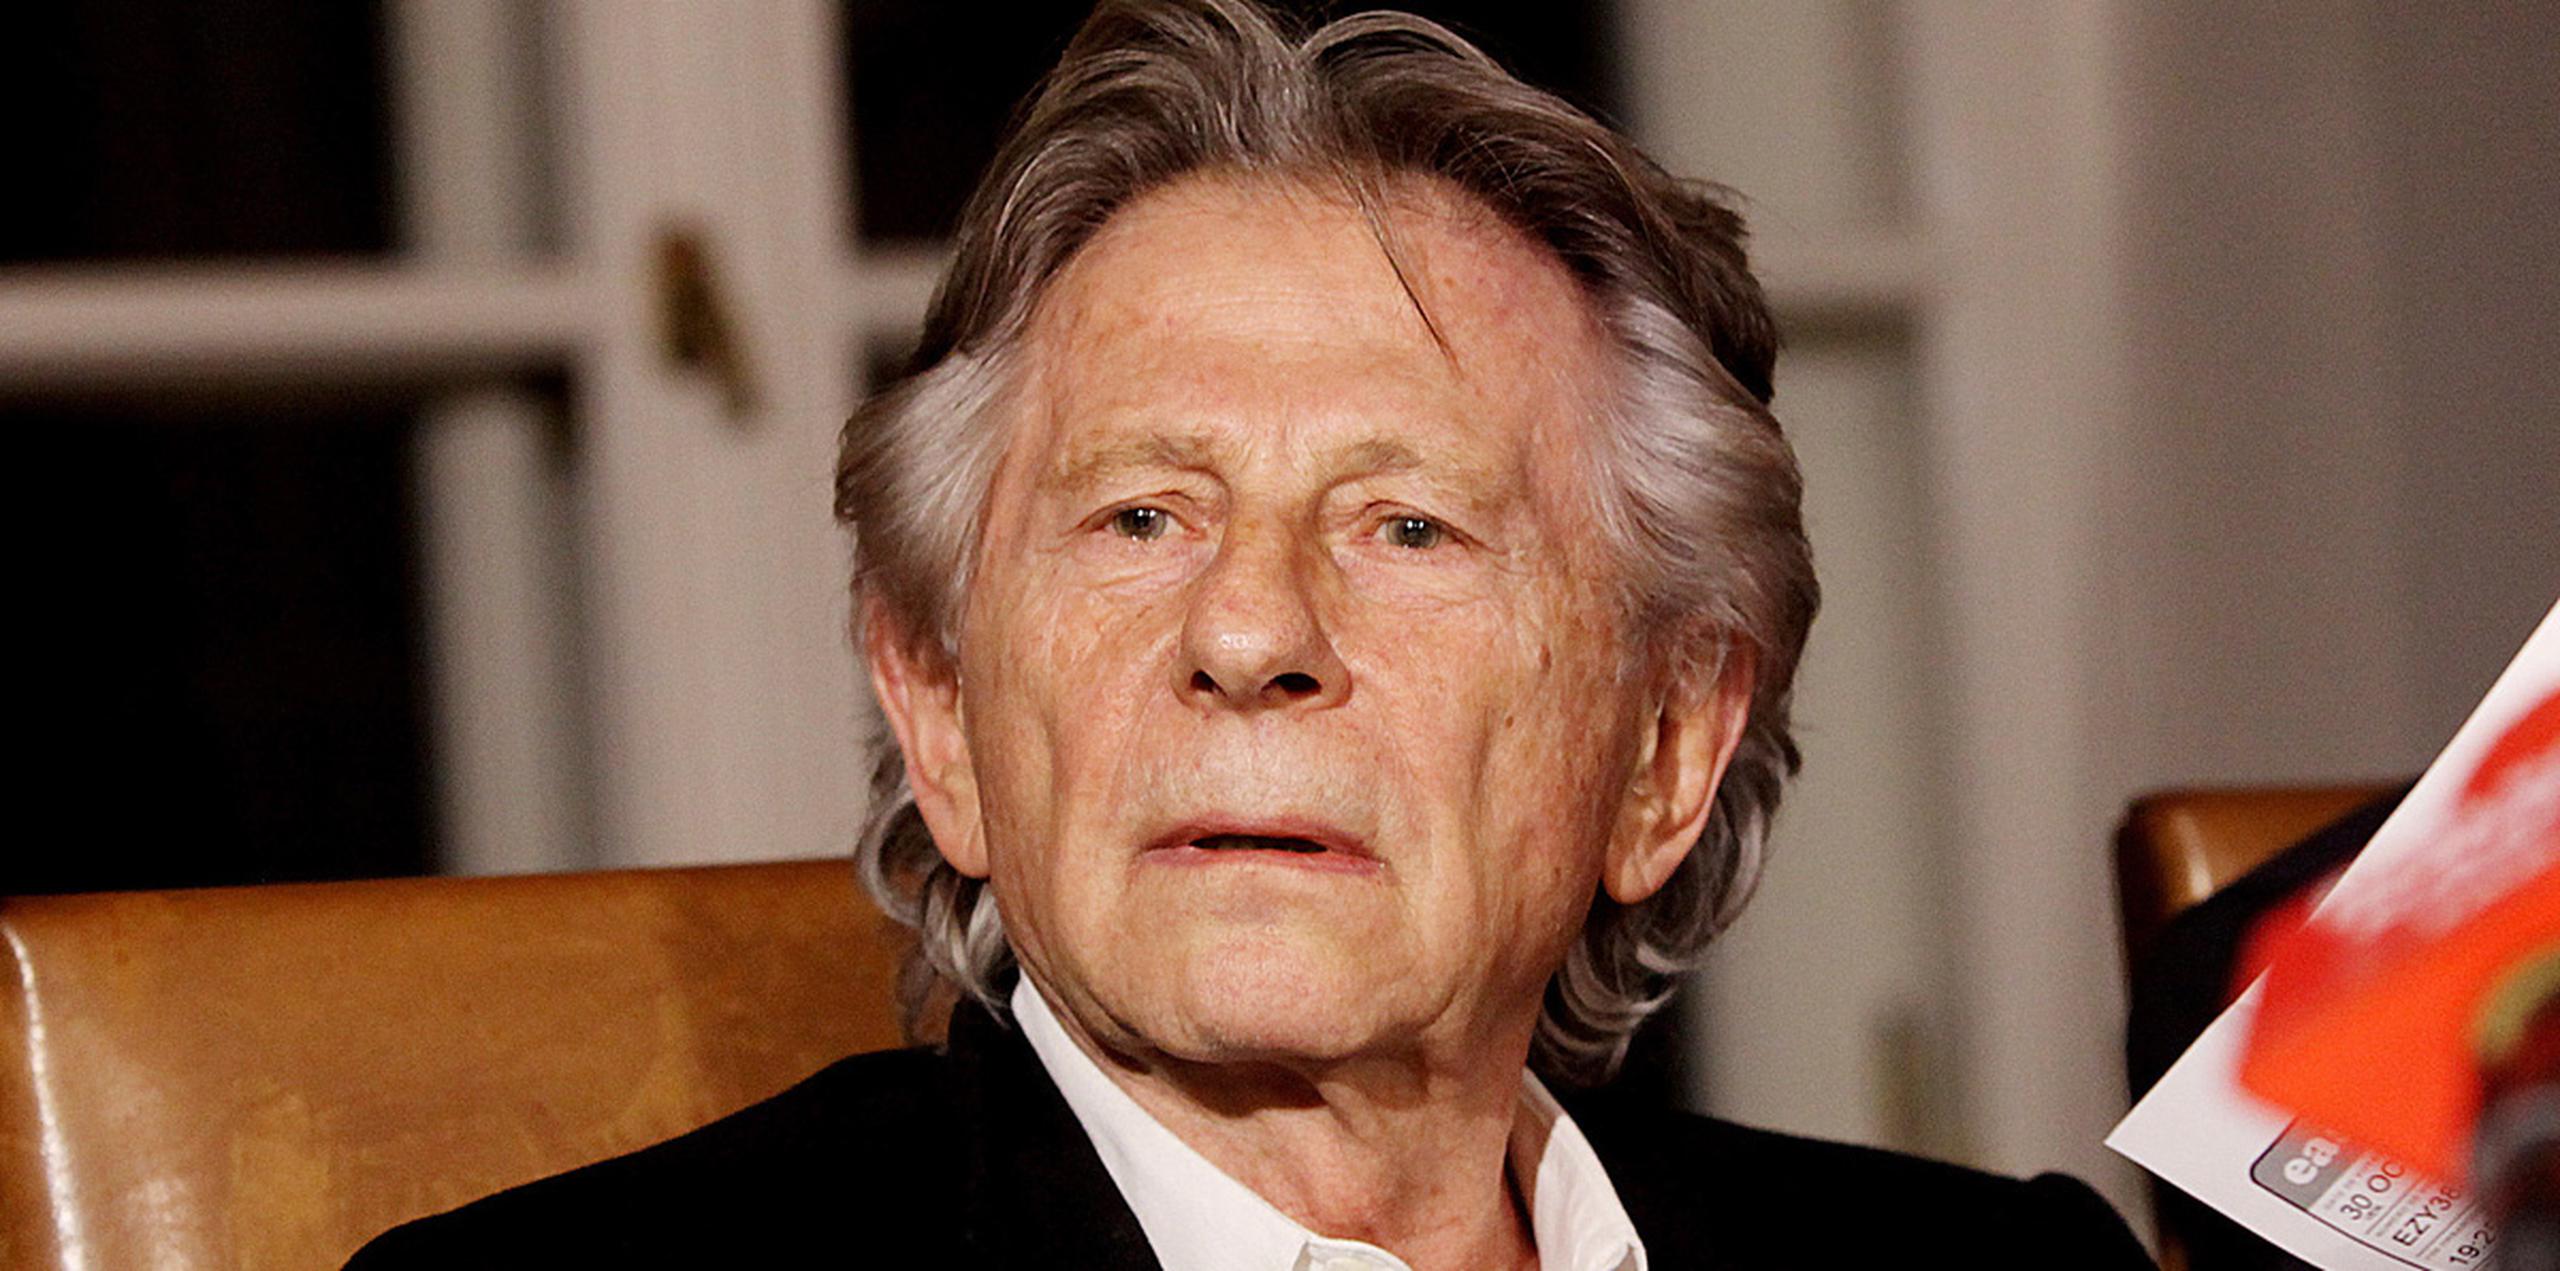 Polanski ganó el Oscar al mejor director en 2003 por "El Pianista". (AP)